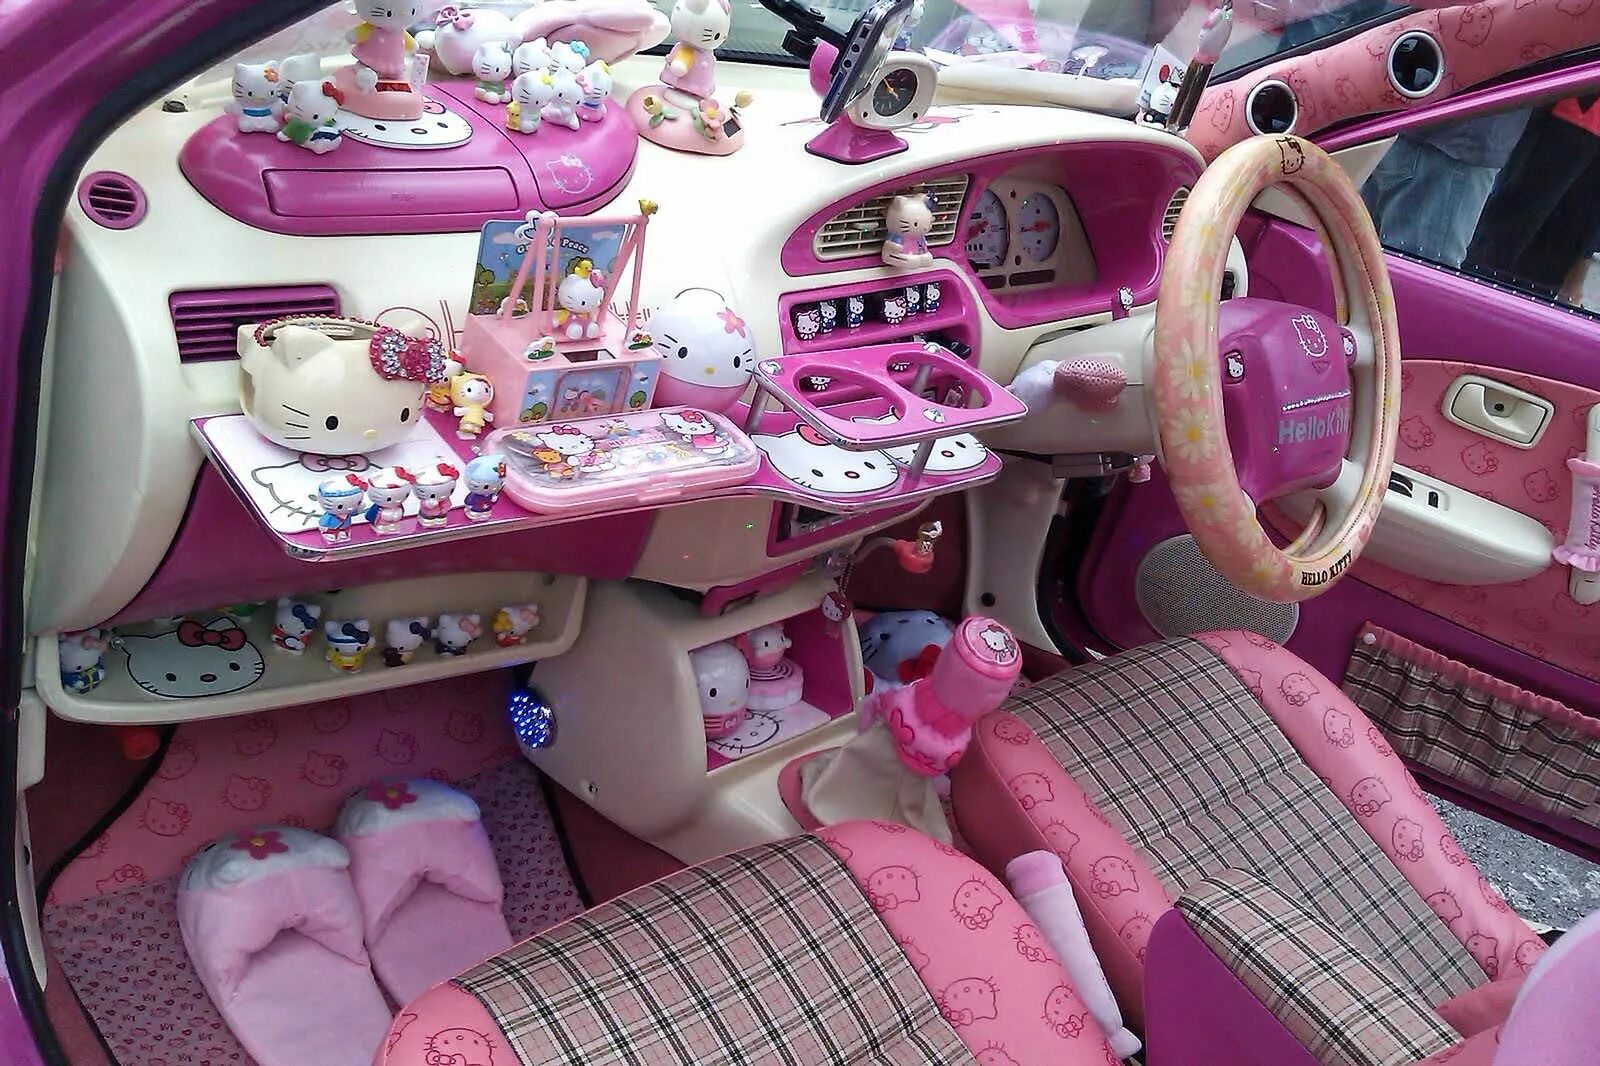 Как называется штука в машине. Салон автомобиля Хелло Китти. Машина Хеллоу Китти салон. Машина Хелло Китти розовая. Розовая машина с Хеллоу Китти.